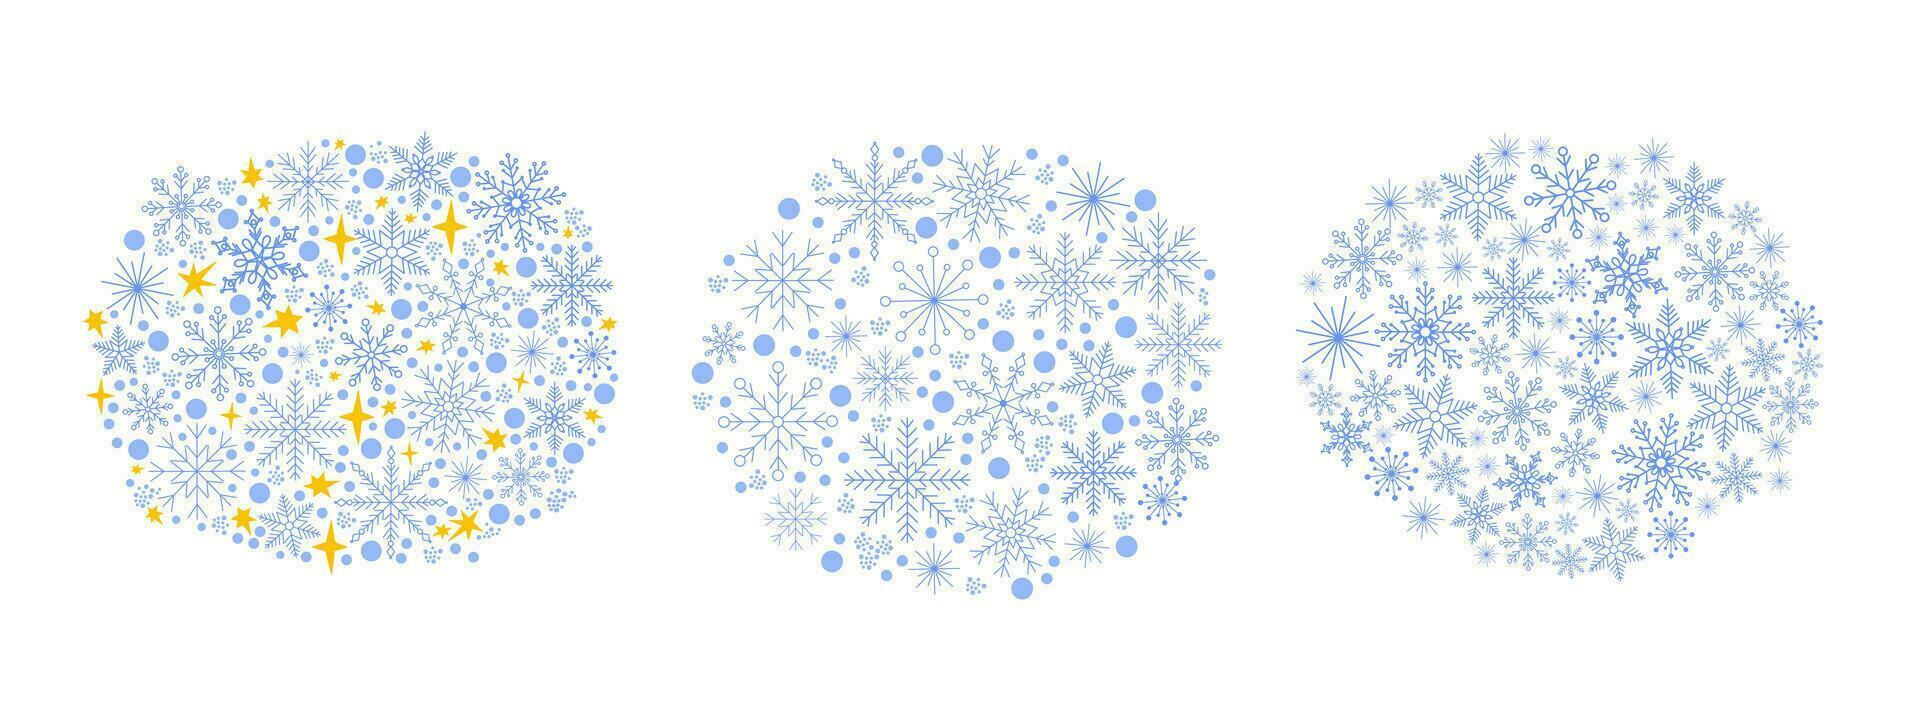 sneeuwvlokken en sneeuw polka punt vormloos wolken reeks gemakkelijk Kerstmis vakantie viering decor vector illustratie, winter concept sjabloon voor groet kaart, uitnodiging, poster, banier ontwerp